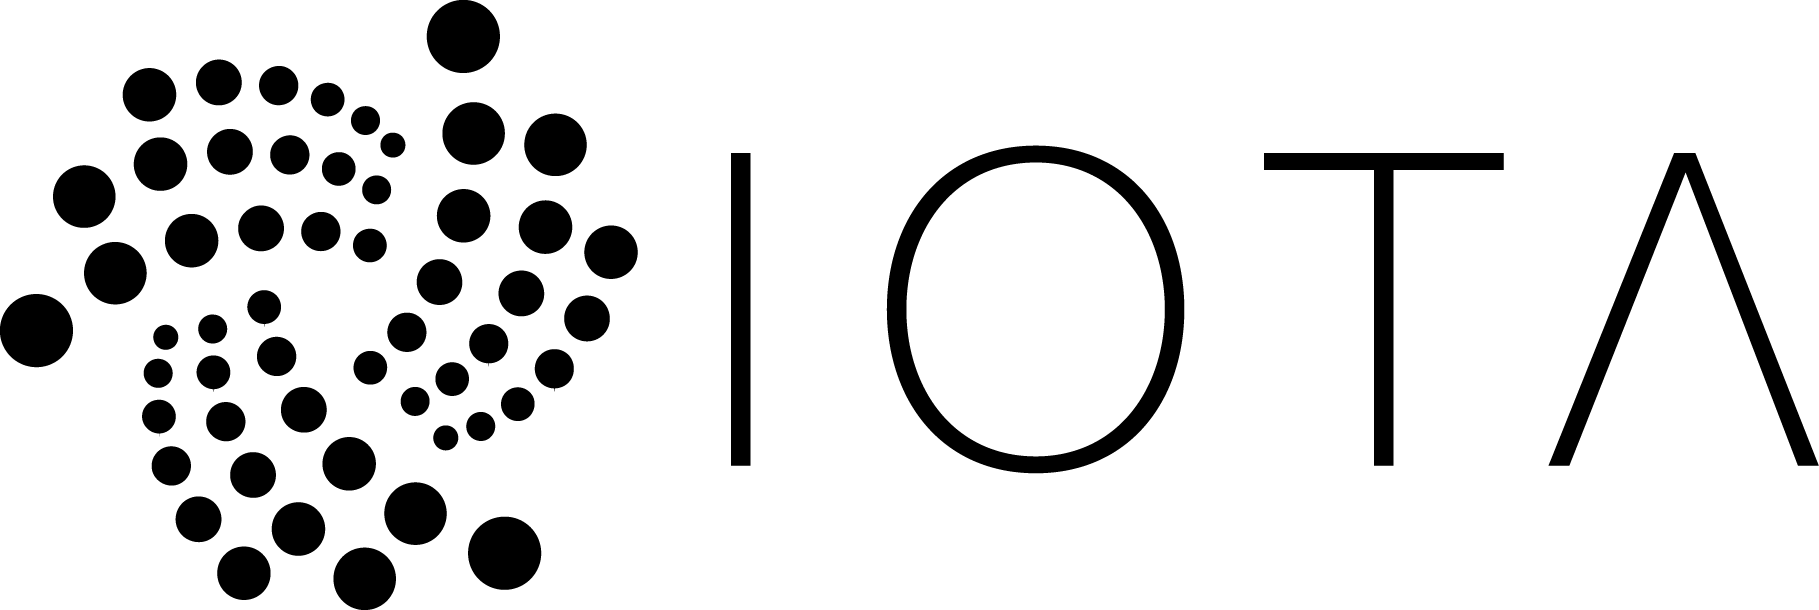 Iota Logo - Iota logo.png